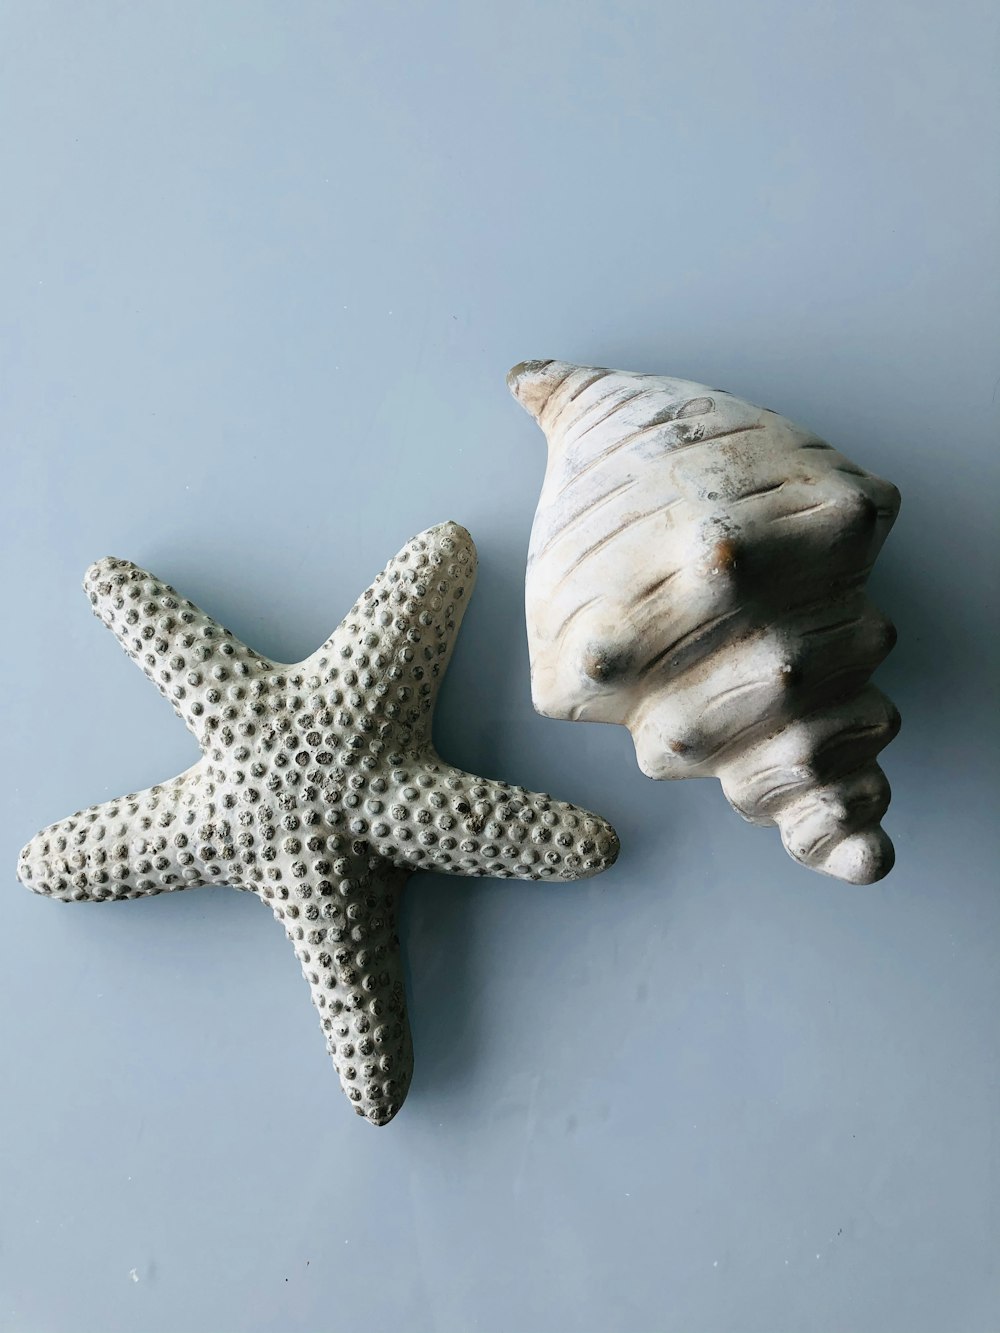 estrela-do-mar branca e marrom na superfície branca